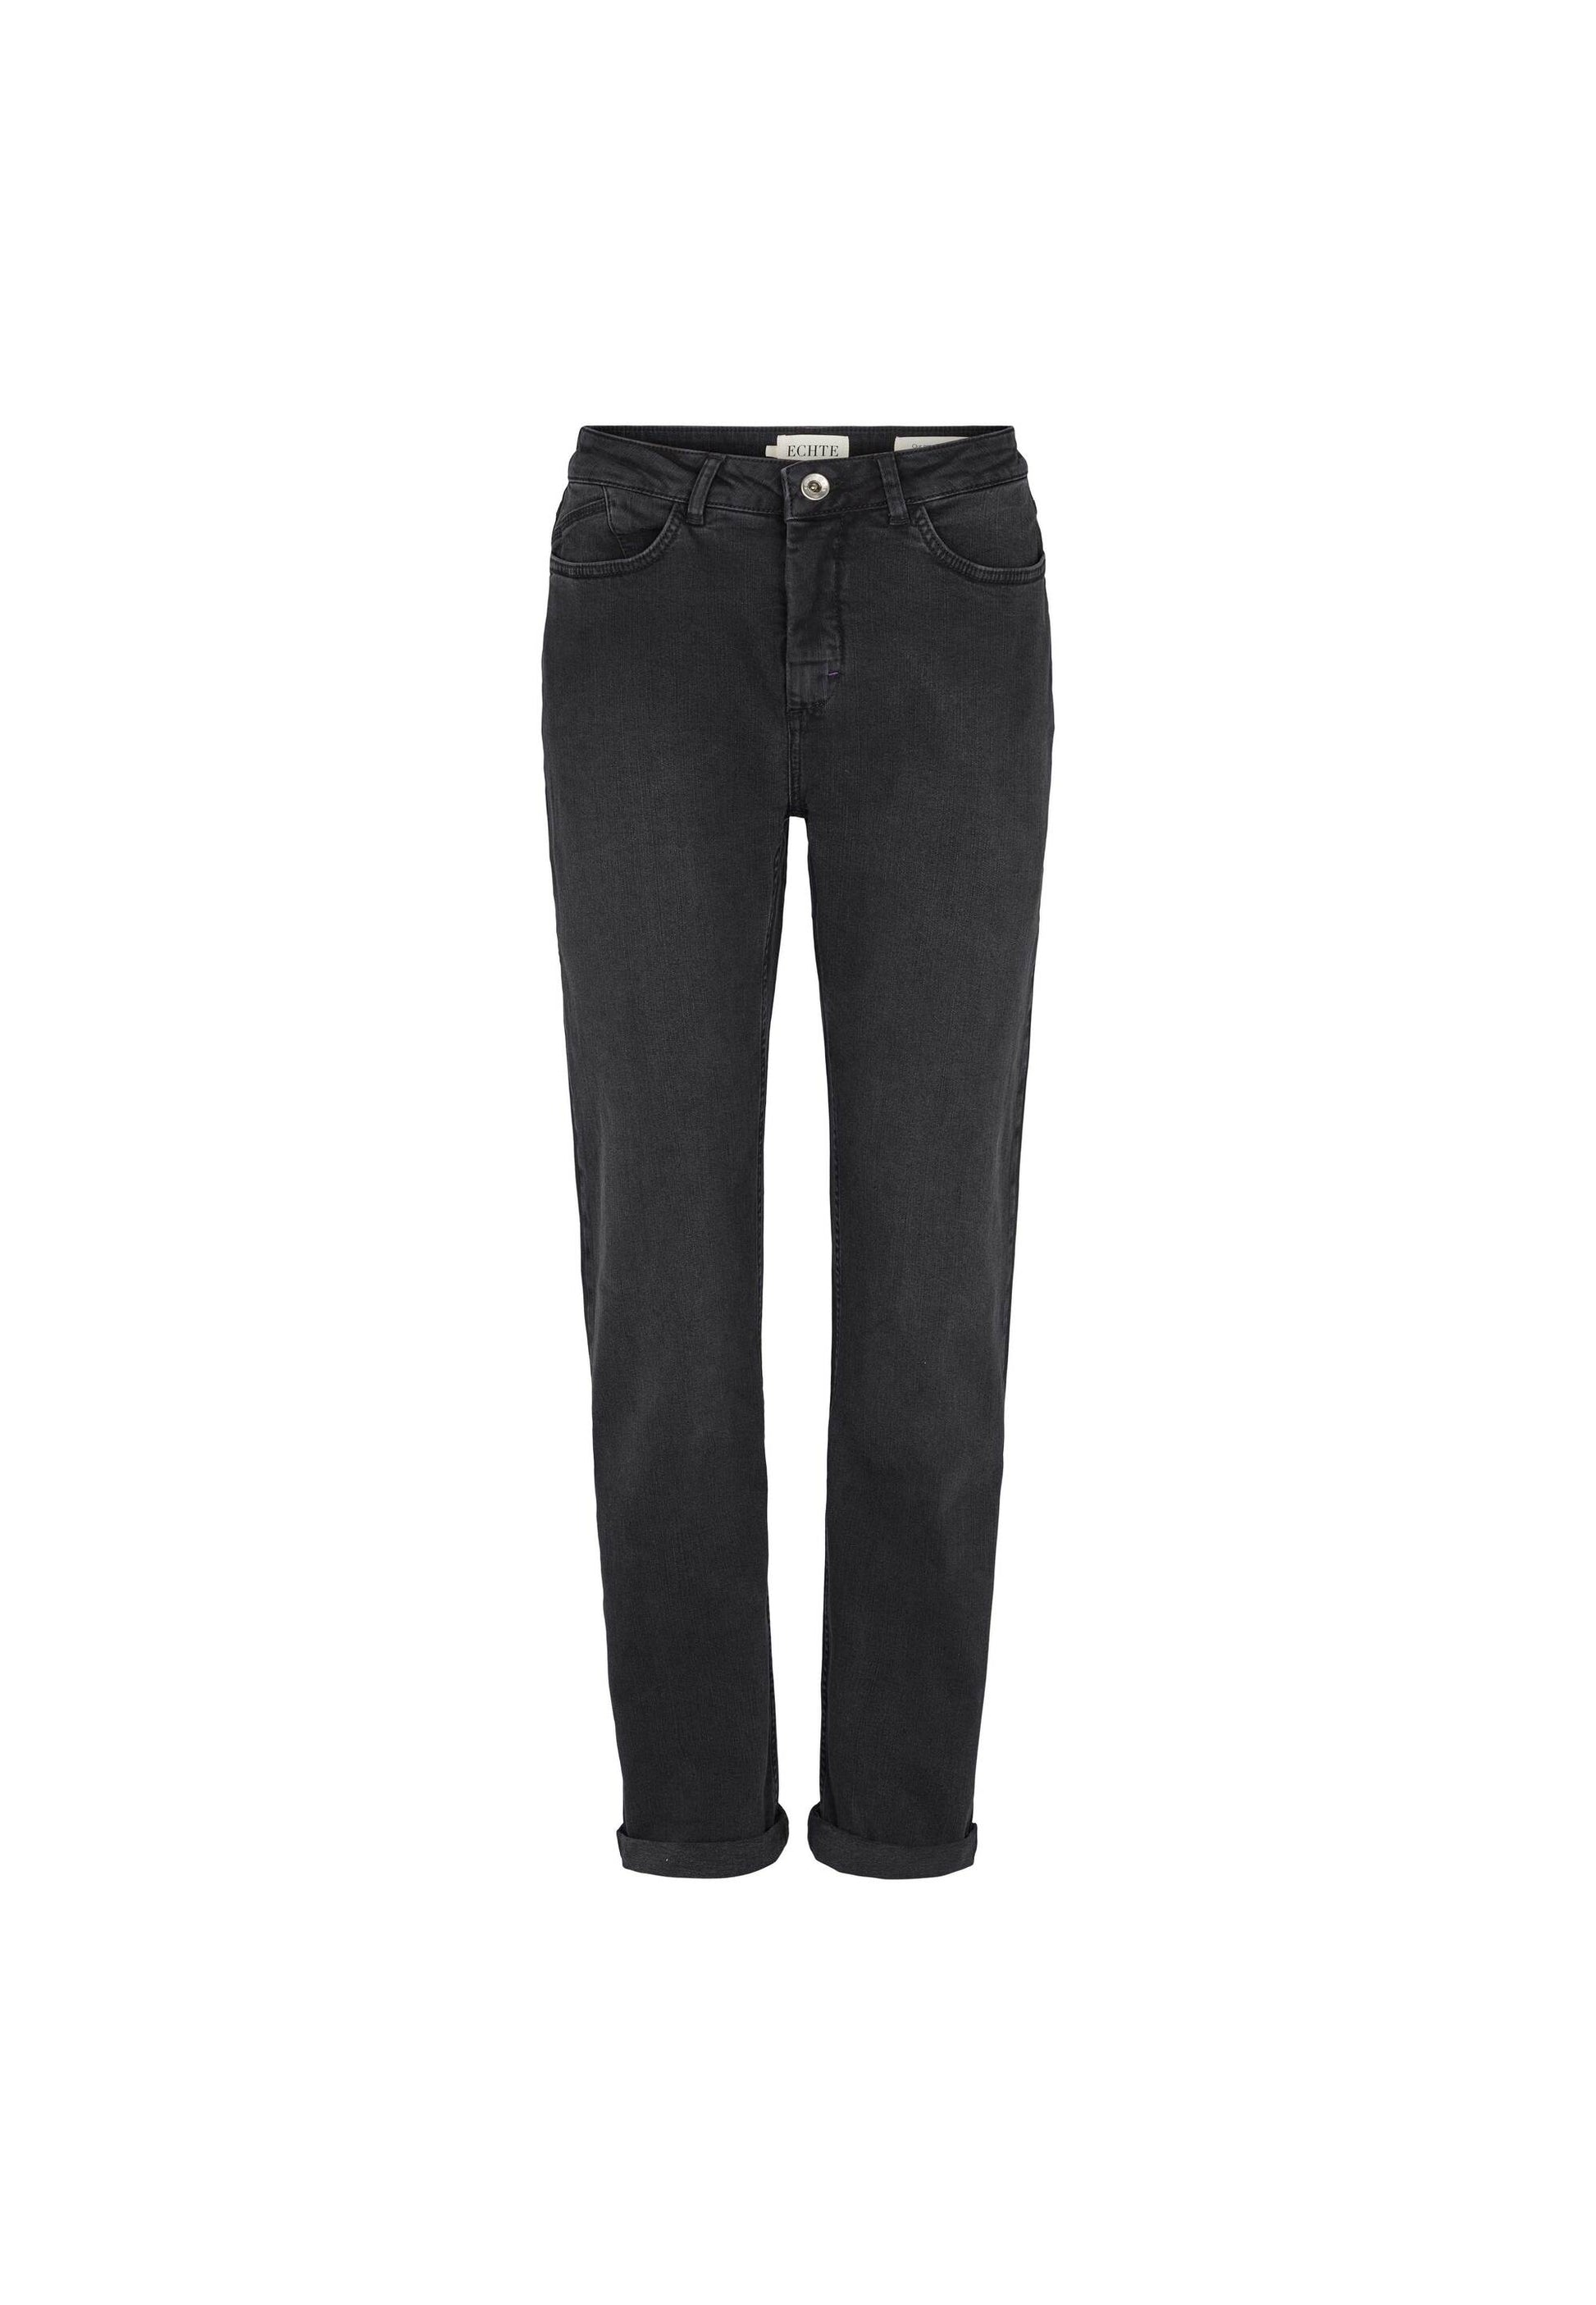 ECHTE Vega Jeans Trousers 09004 Black Wash